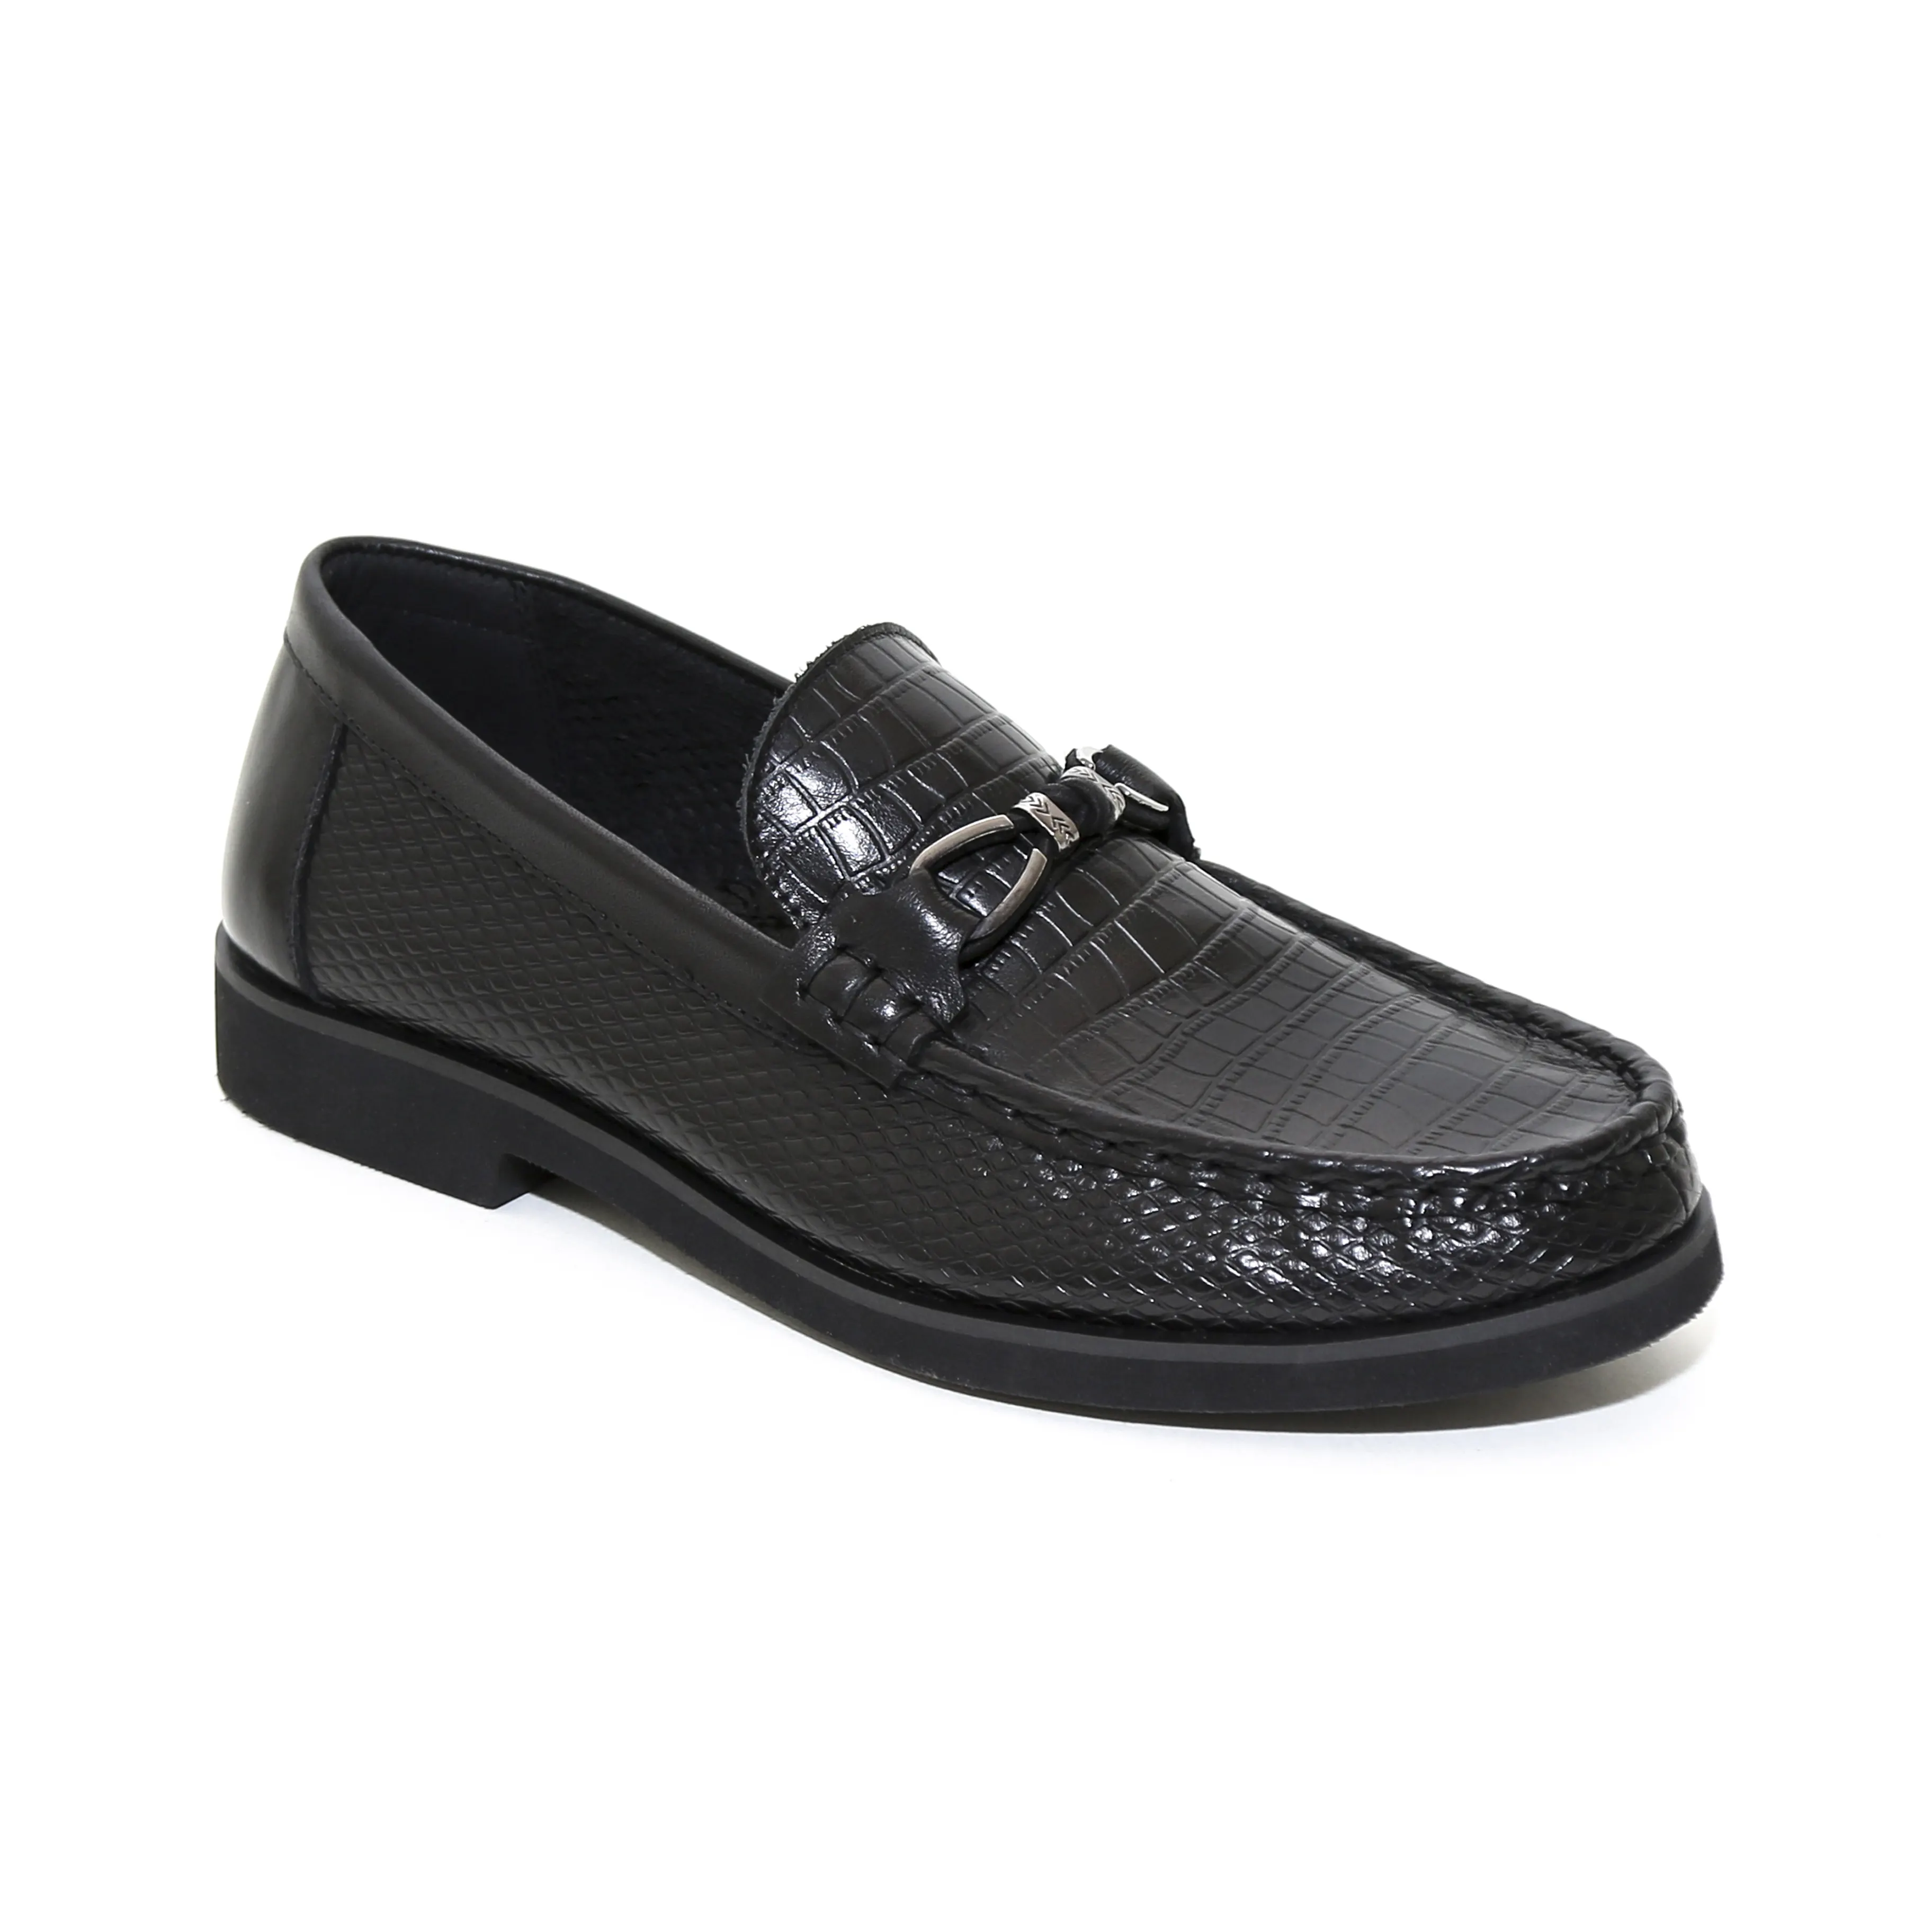 uniforme d'écolier pour enfants en cuir véritable chaussures de soirée noir pour enfants chaussures habillées noires